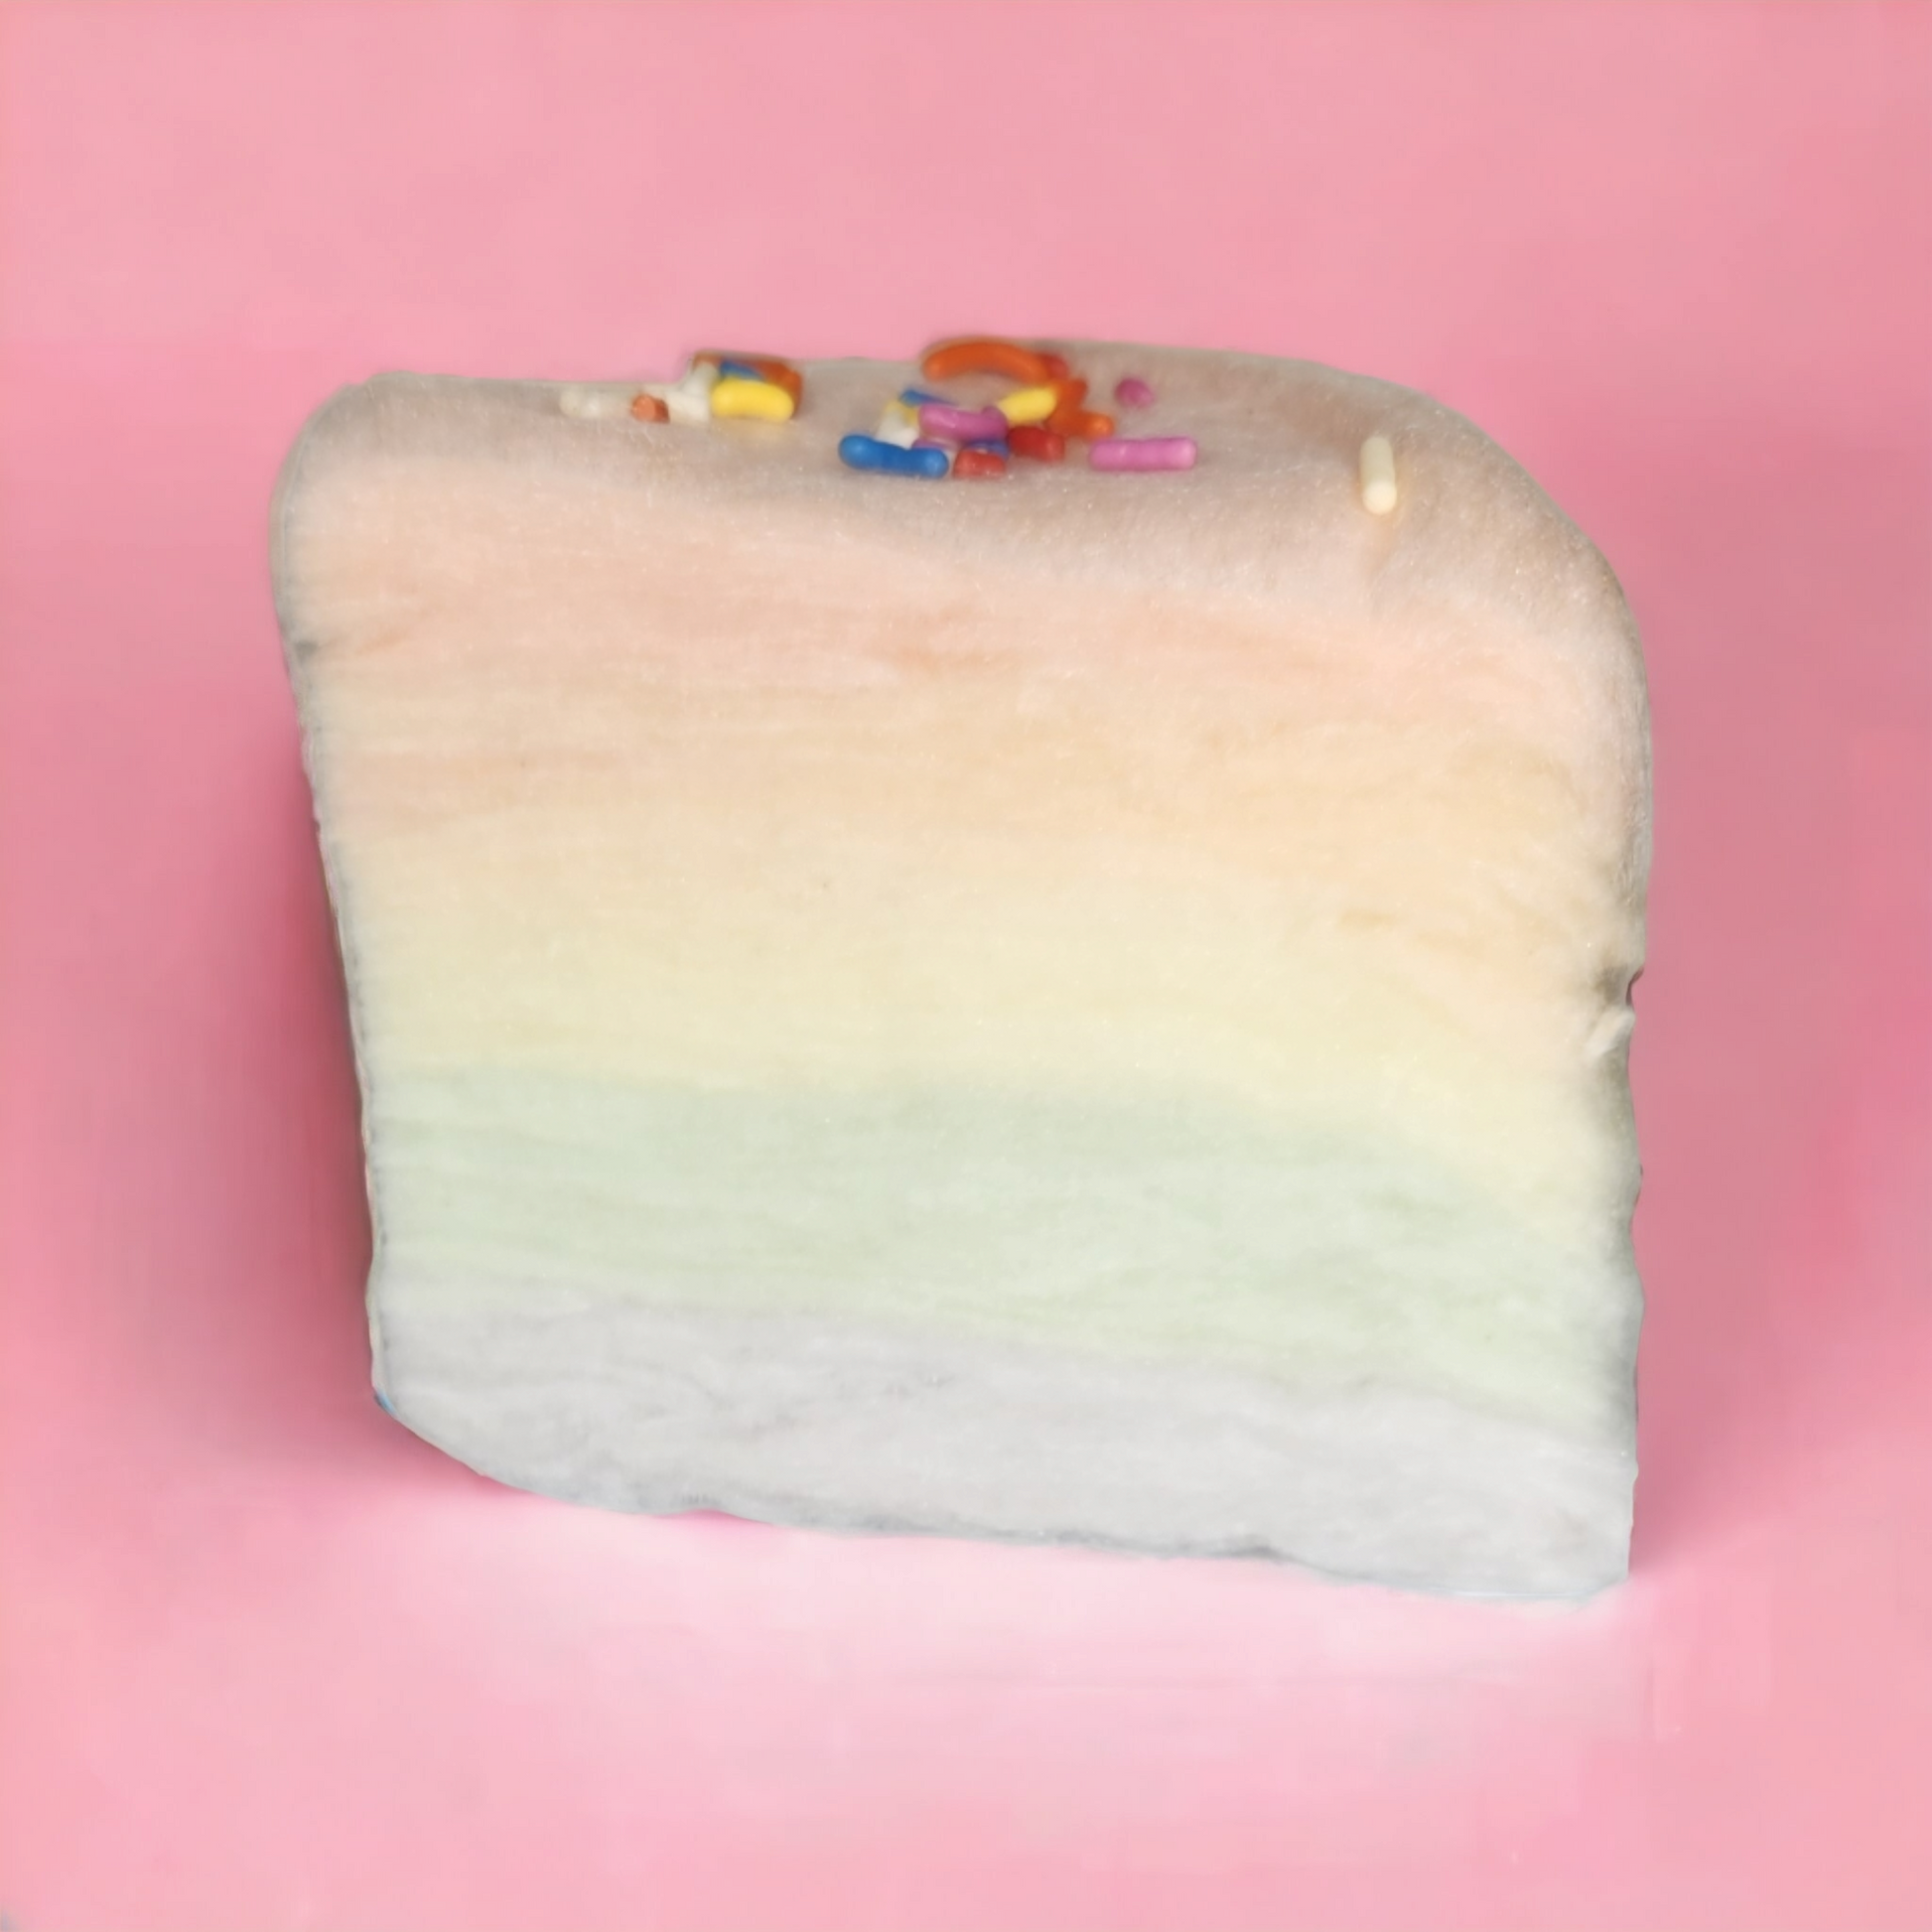 Dye Free Cake – Cotton Candy Cravings